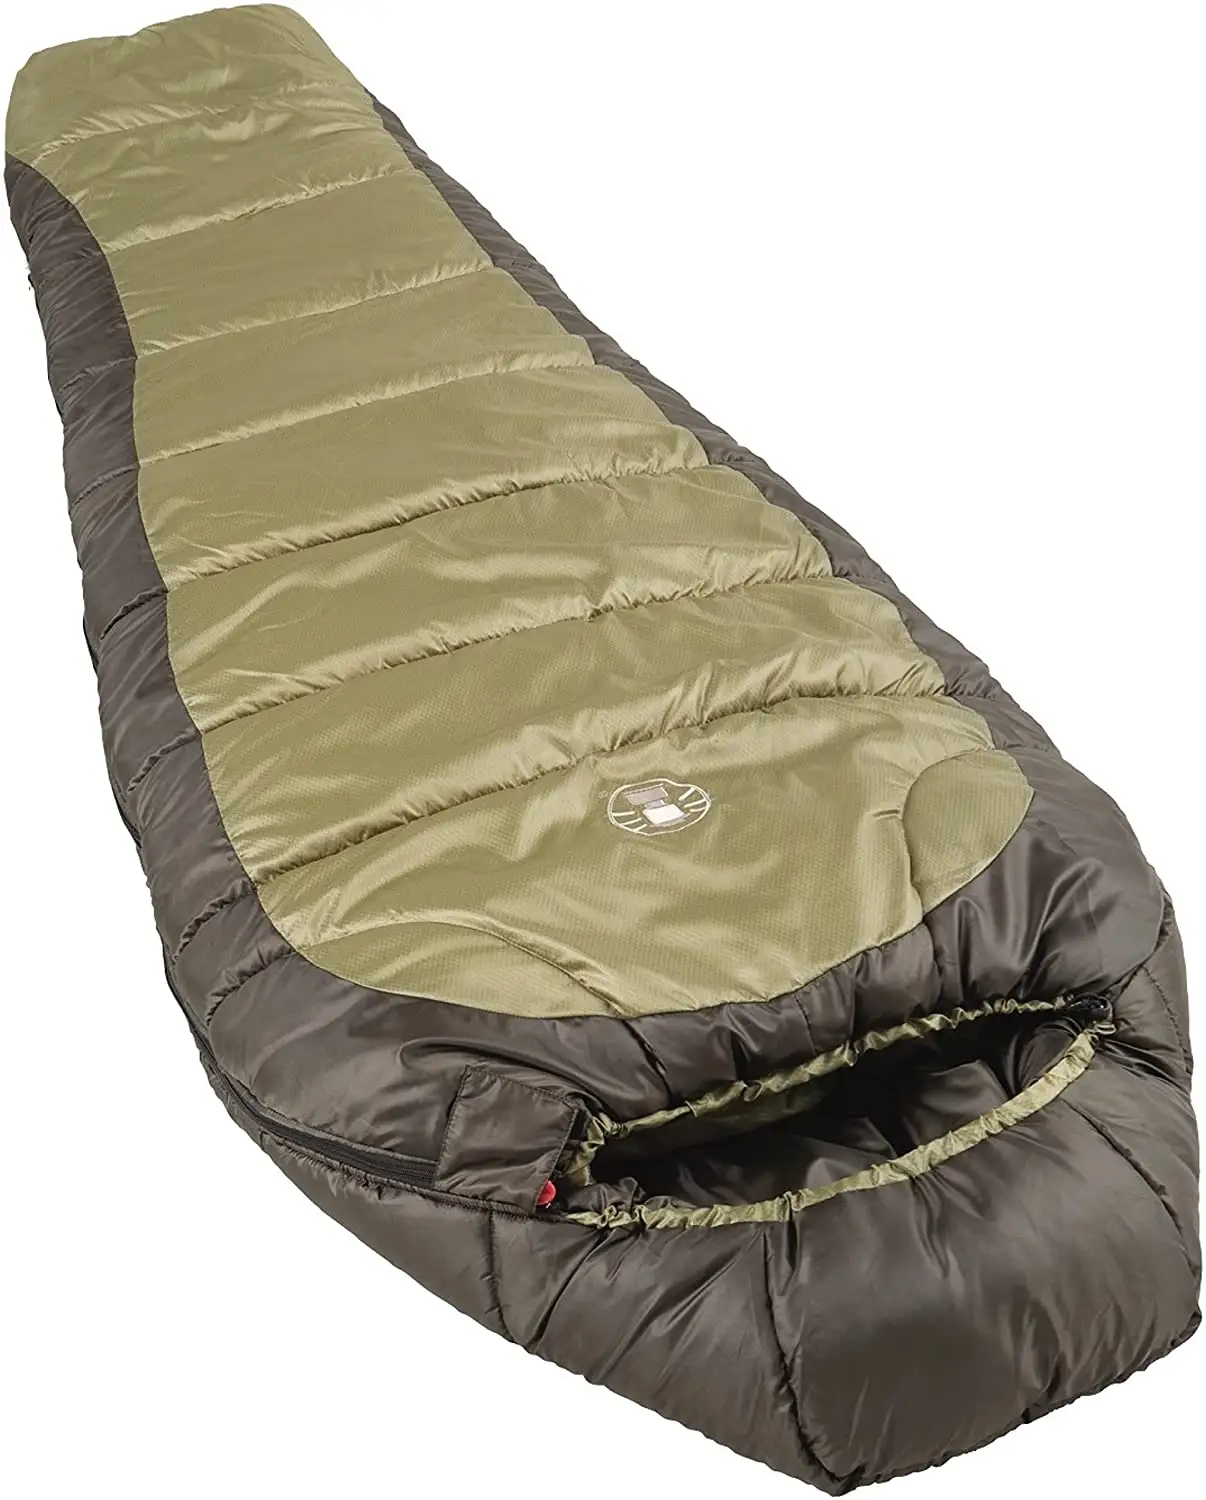 Outdoor Cold-Weather Winter Camping Sleeping Gear Adult Sleep Bag Mummy Sleeping Bag